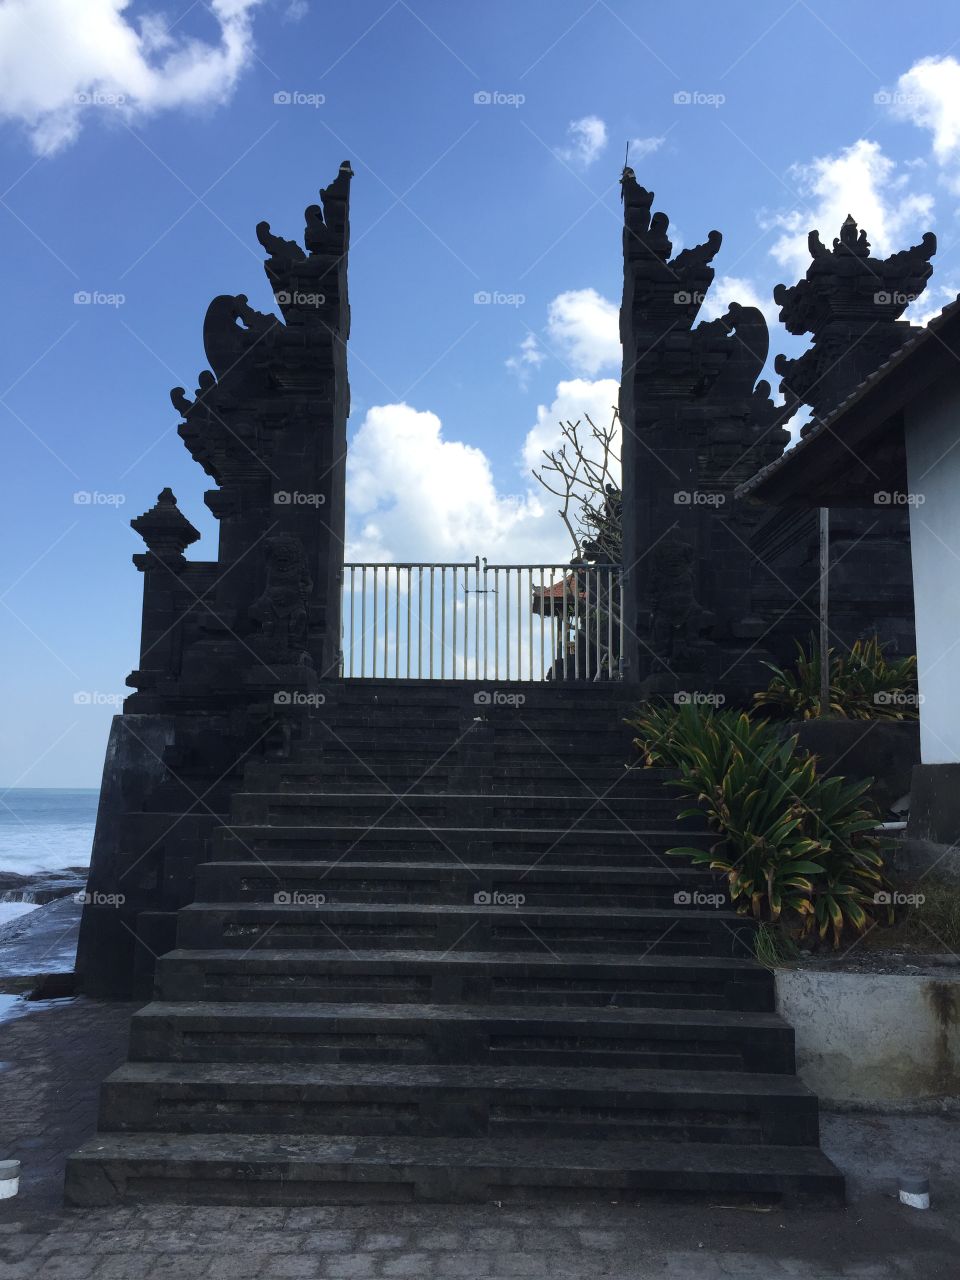 Bali gates